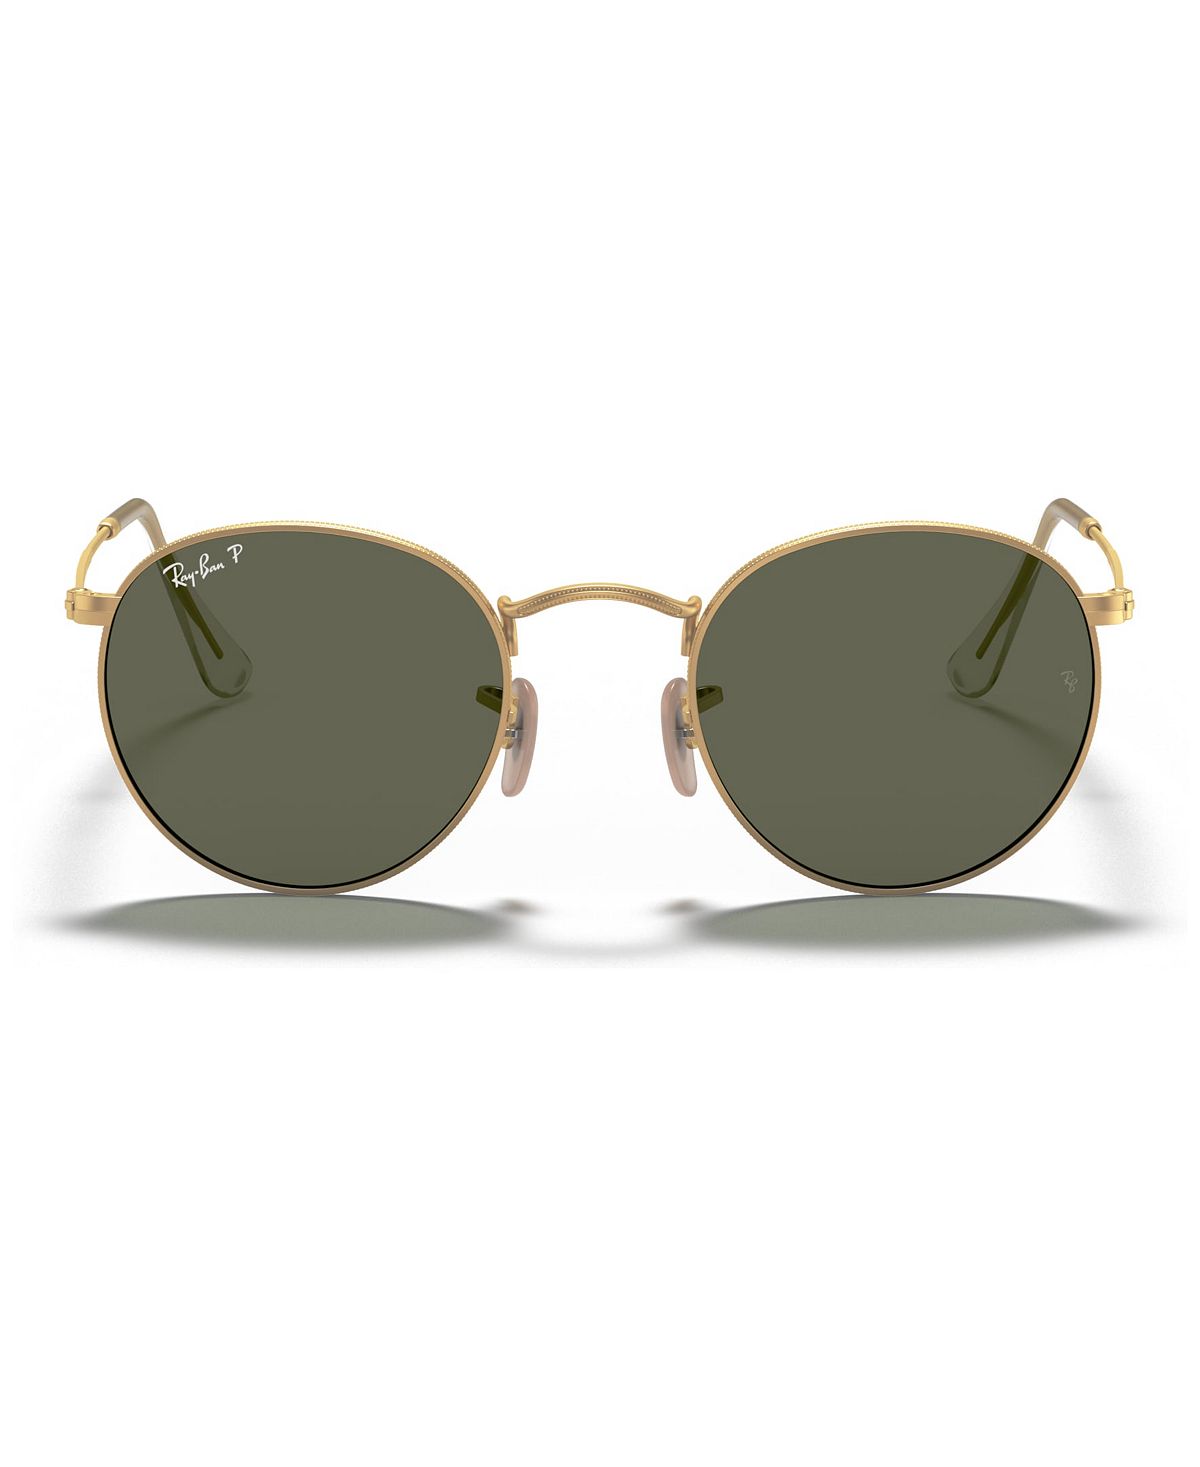 Поляризованные солнцезащитные очки, rb3447 круглый металл Ray-Ban, мульти солнцезащитные очки ray ban солнцезащитные очки